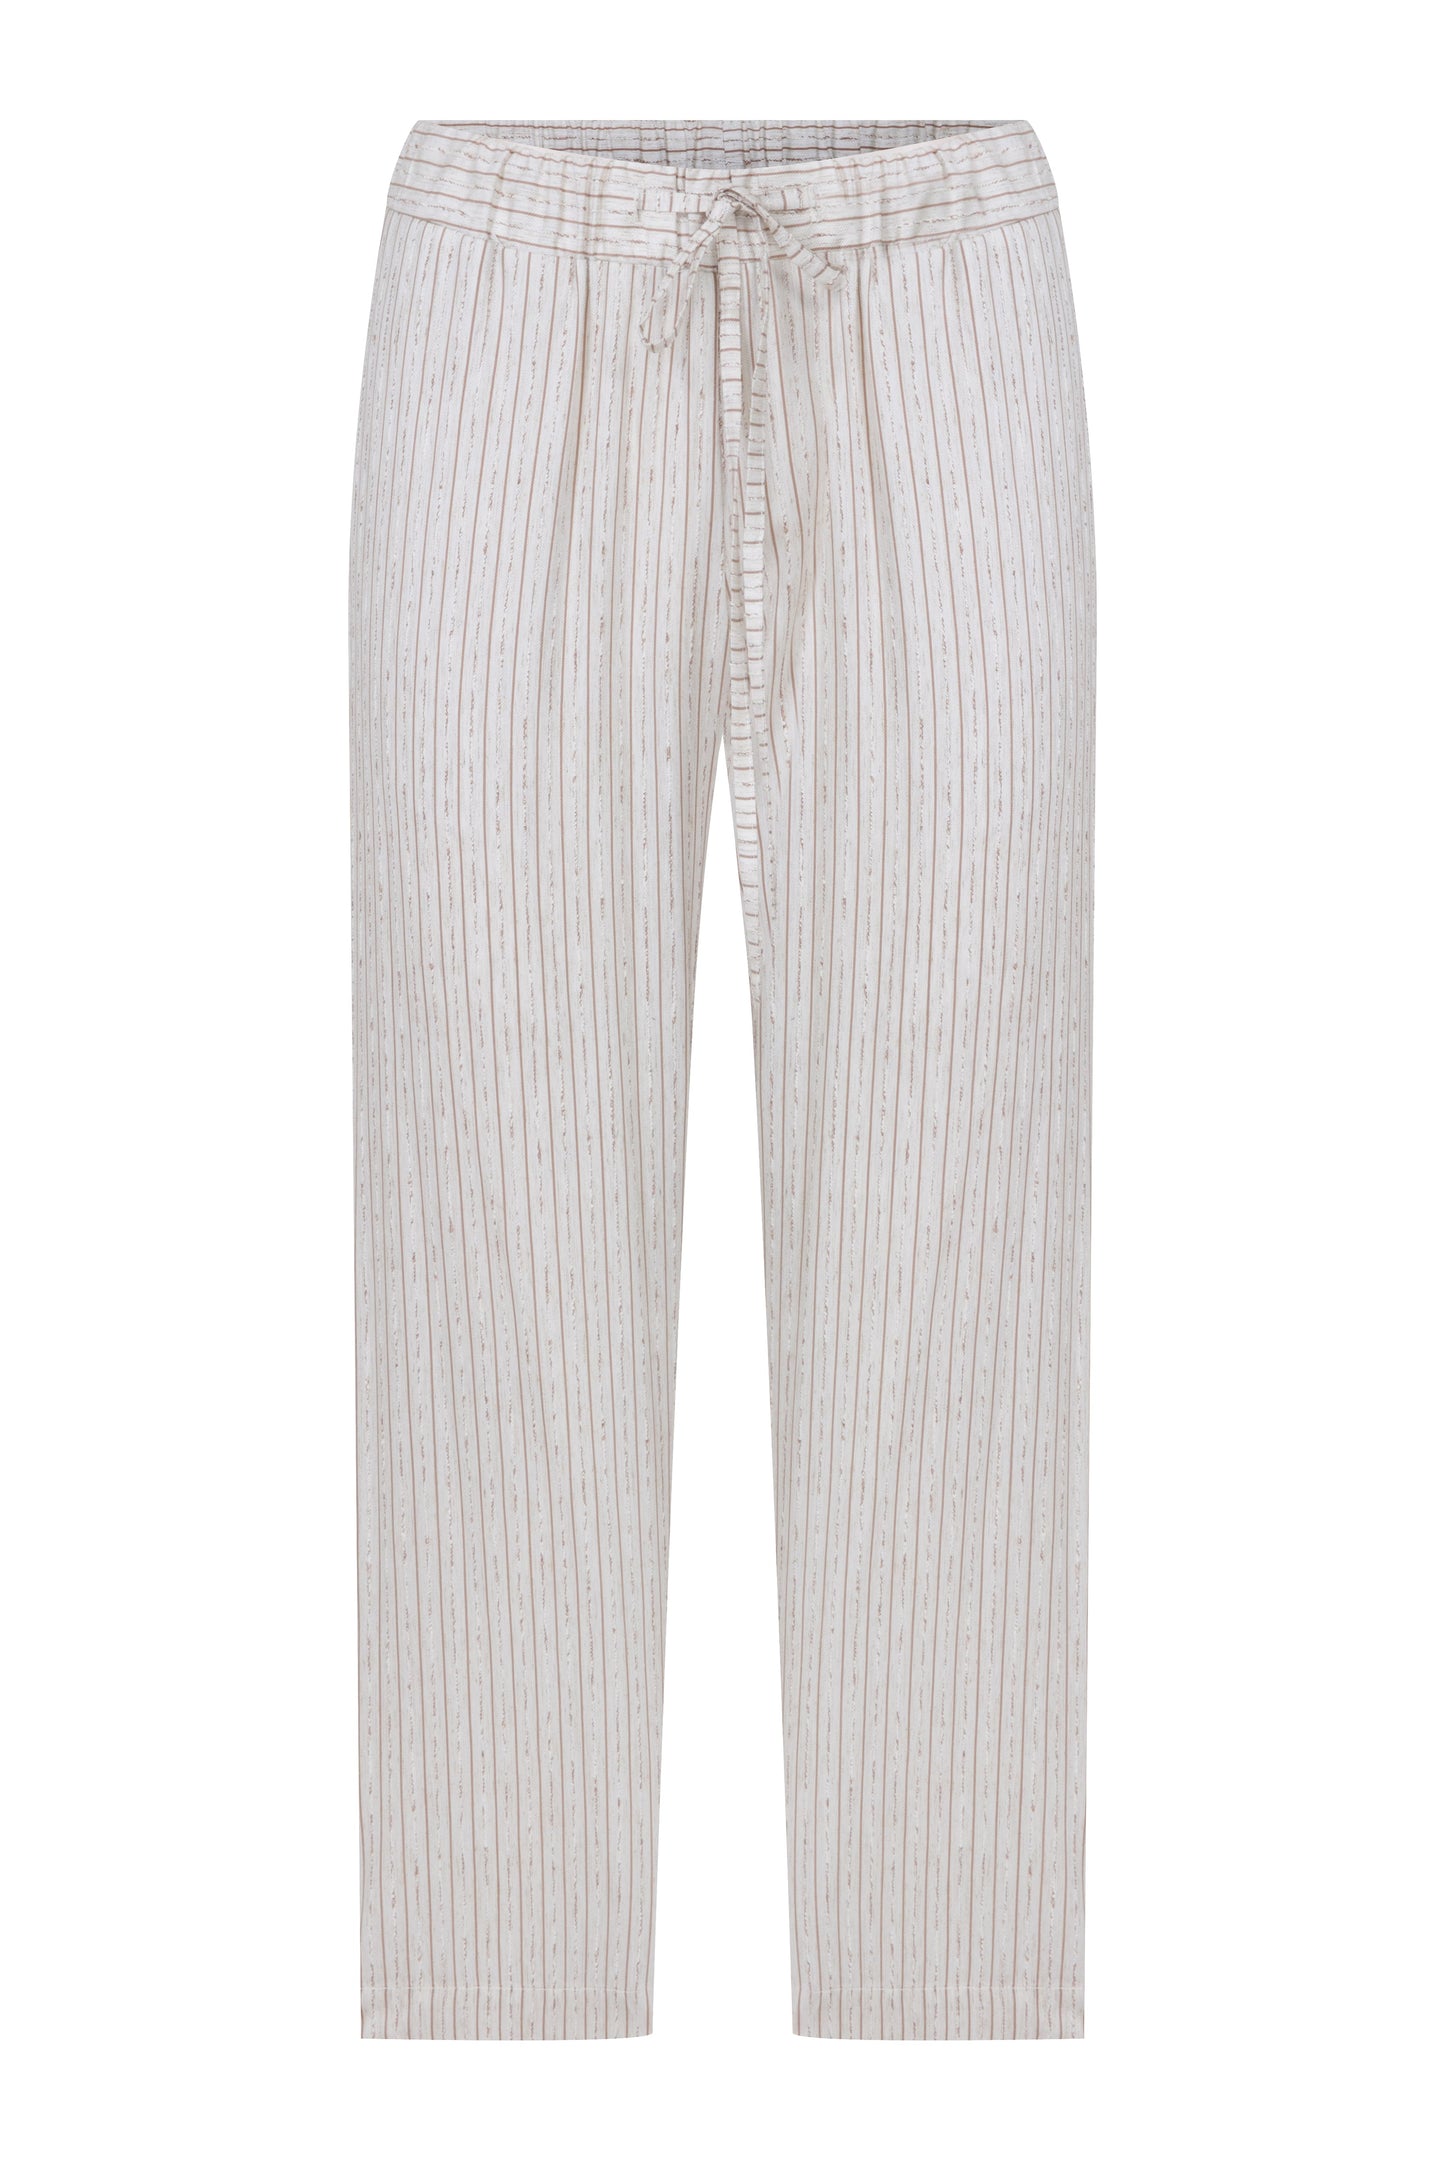 Kyra Striped Linen Trousers in Walnut